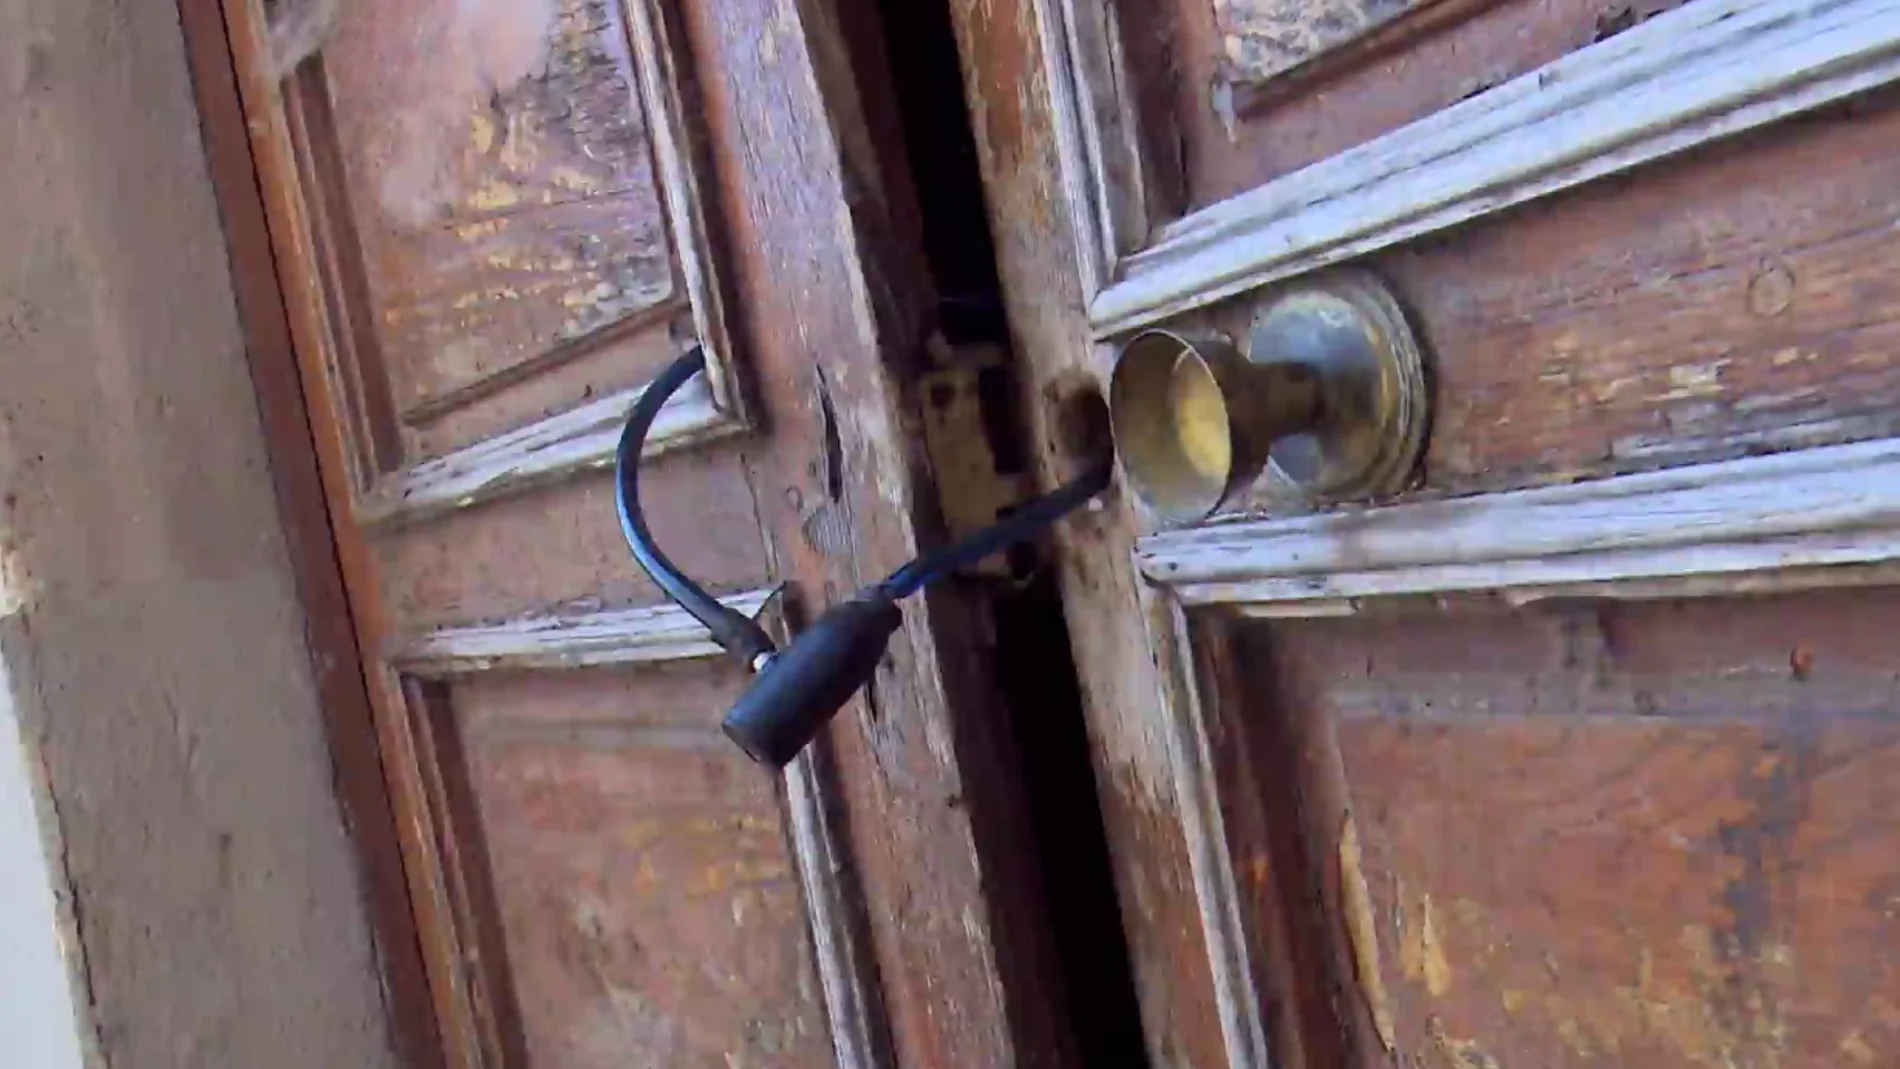 Okupa Zaragoza: El propietario cierra la puerta con candado y la okupa llama a la policía para que le abra